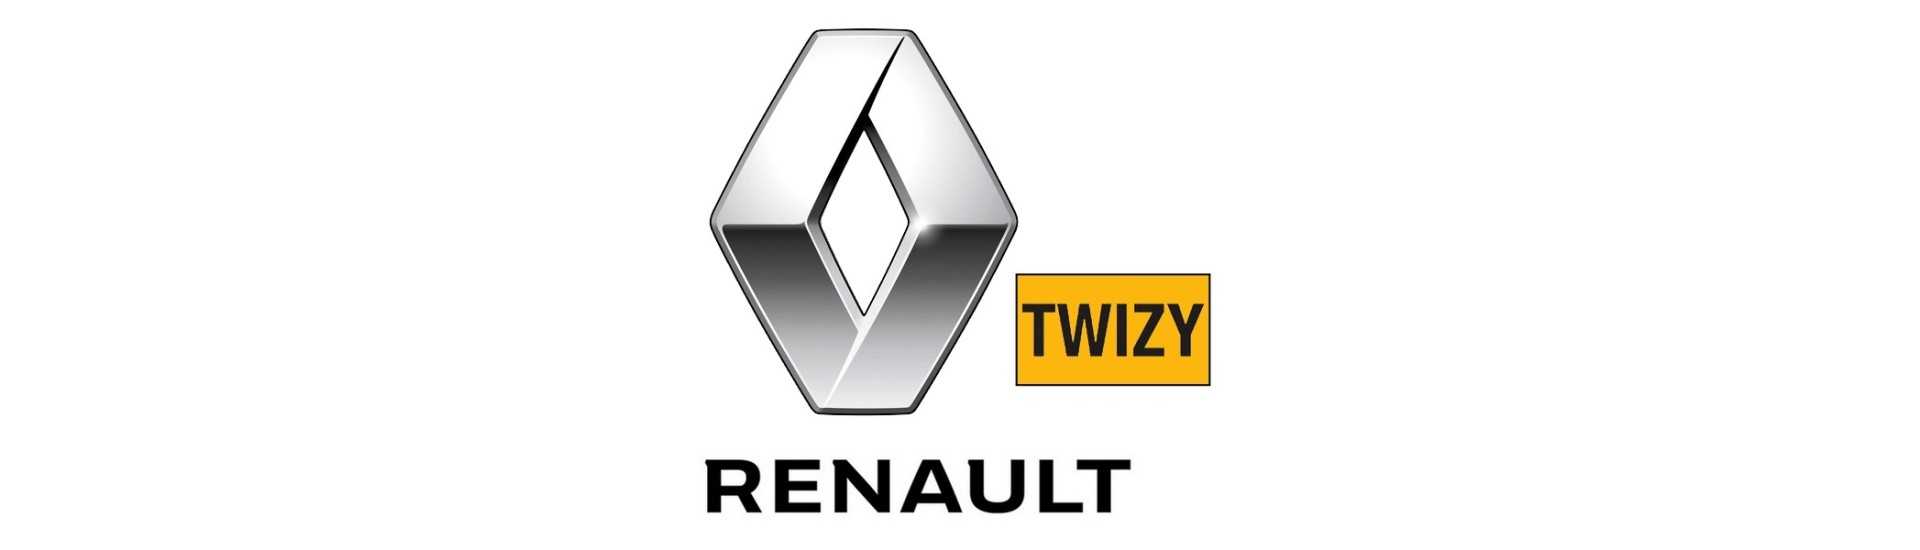 Felge zum besten Preis für ein Auto ohne Führerschein Renault Twizy